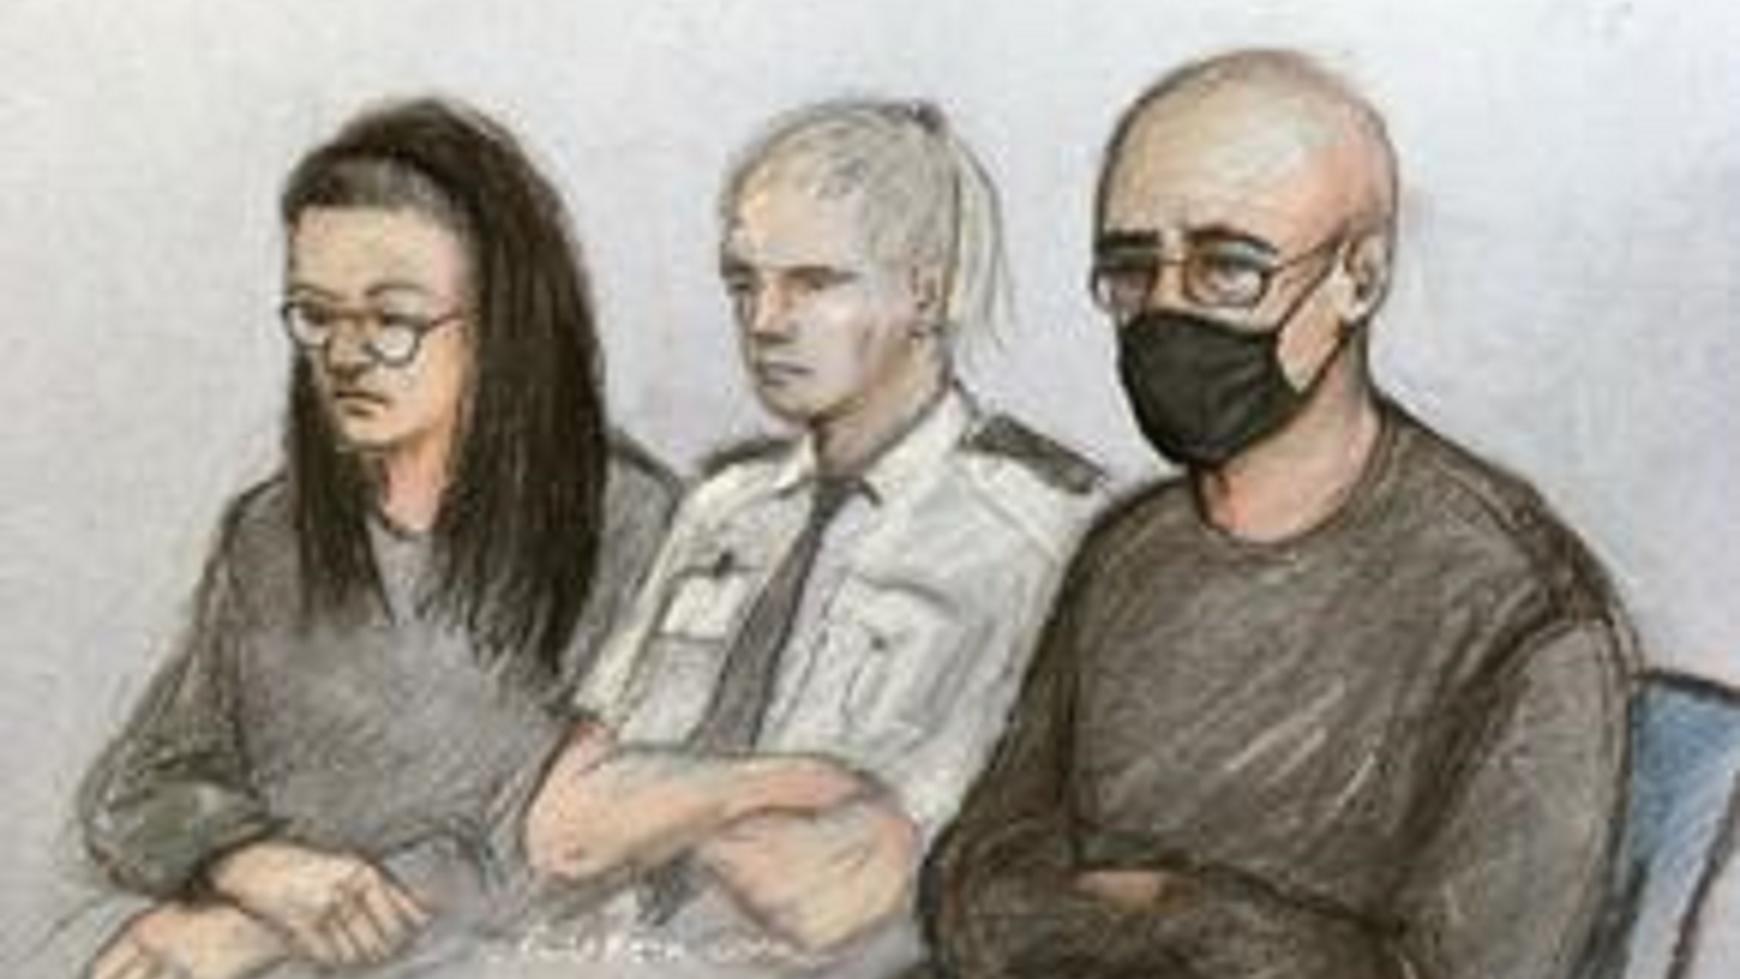 Angharad Williamson und John Cole sitzen als Skizze neben einer Polizistin.